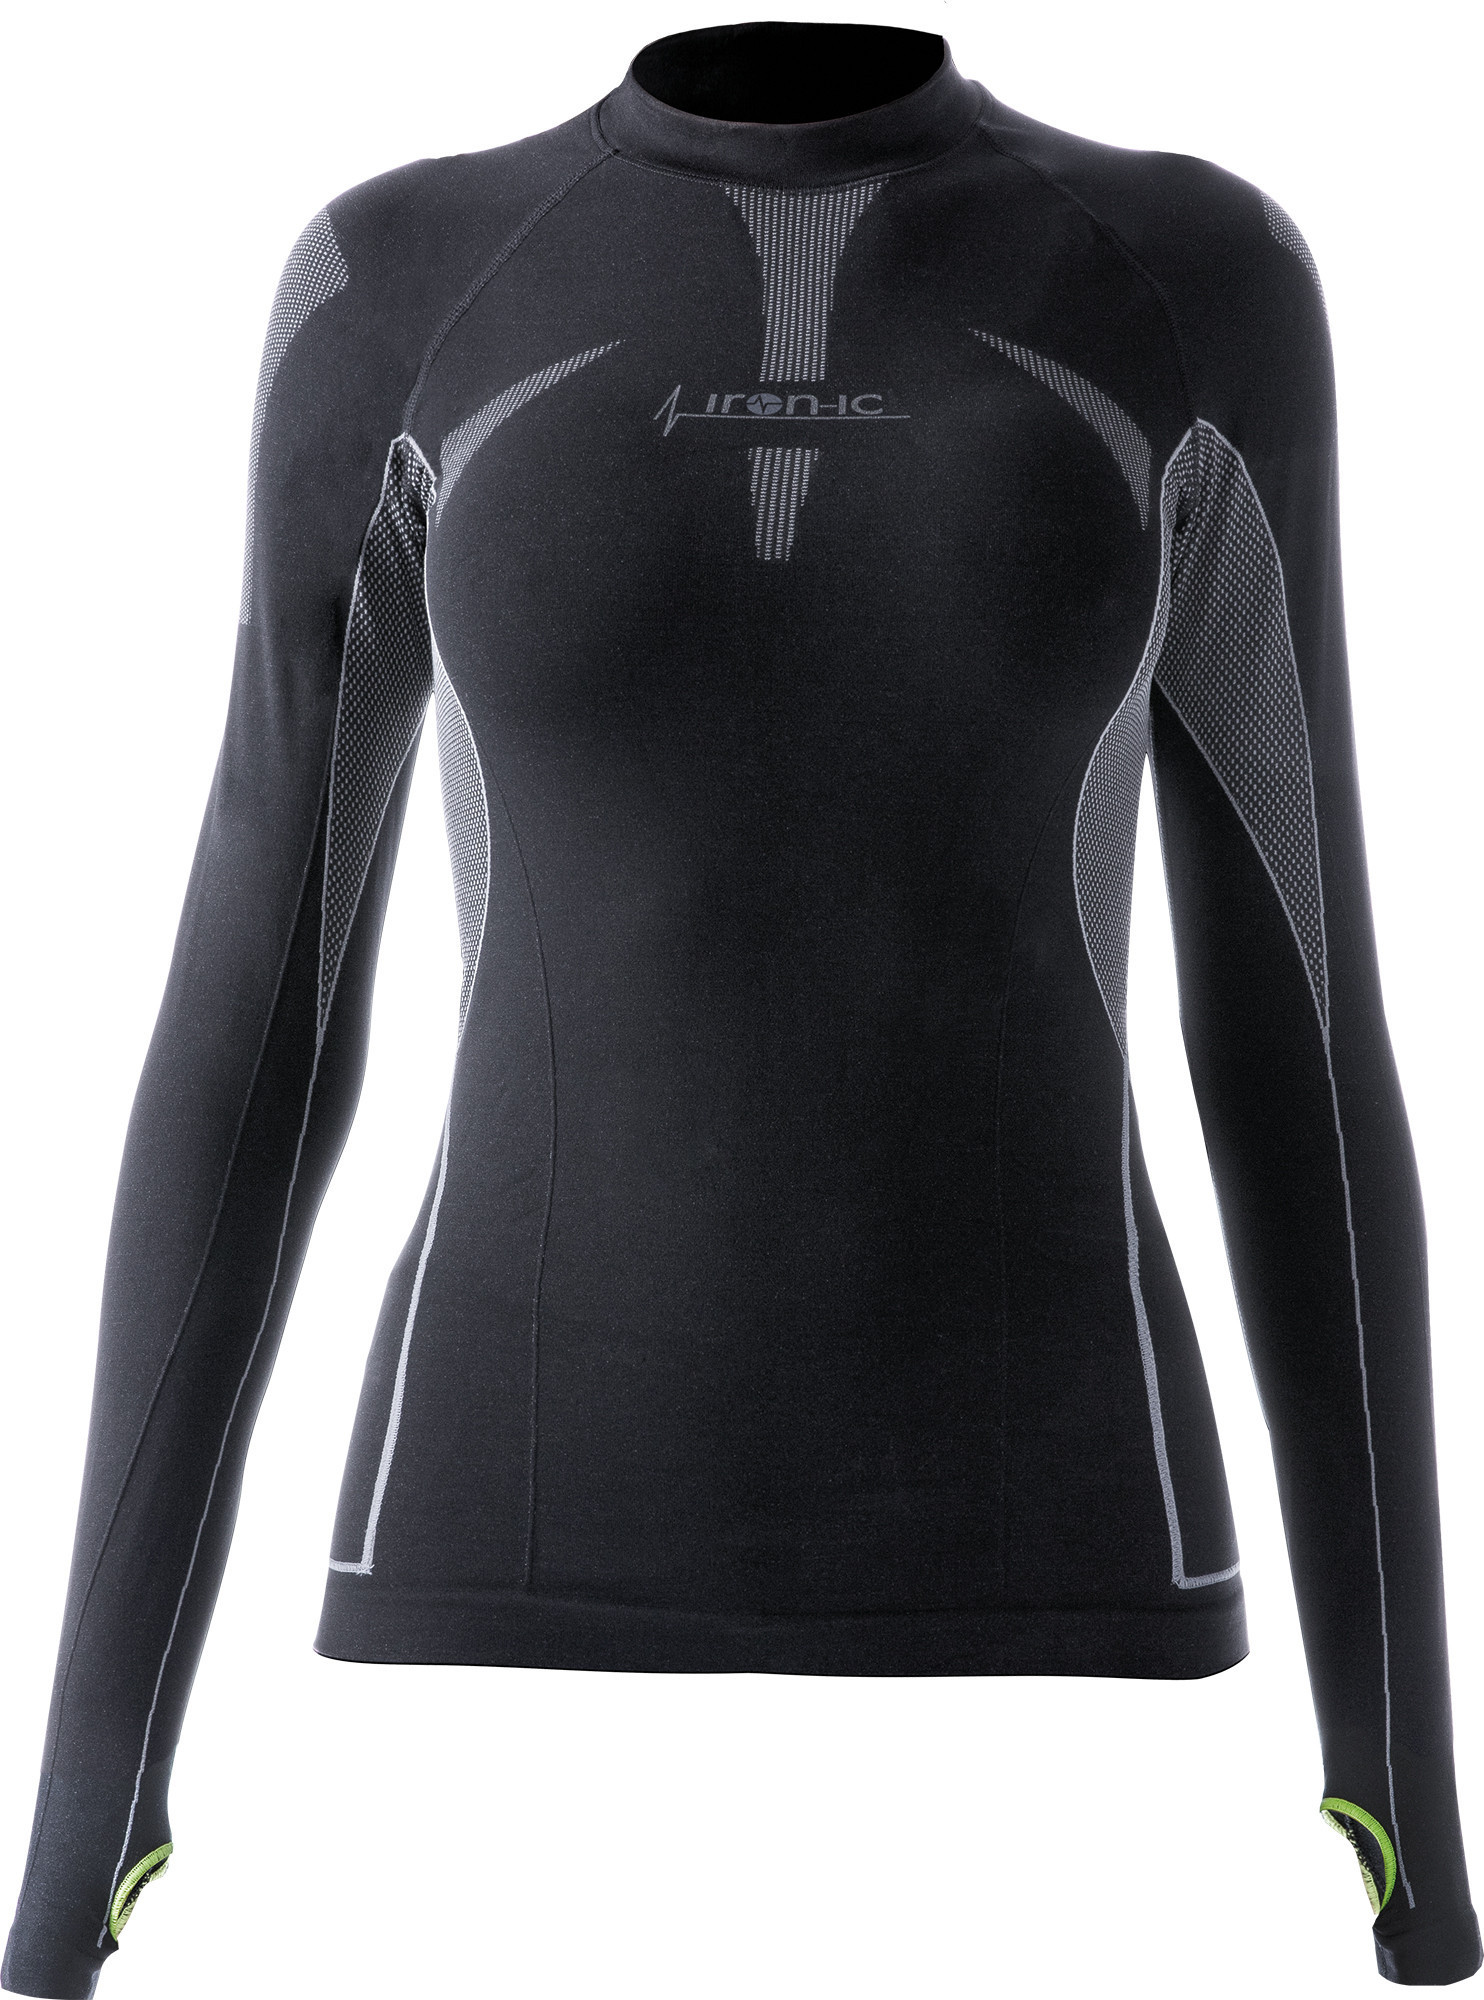 Dámské sportovní tričko s dlouhým rukávem IRON-IC - černá Barva: Černá, Velikost: L/XL